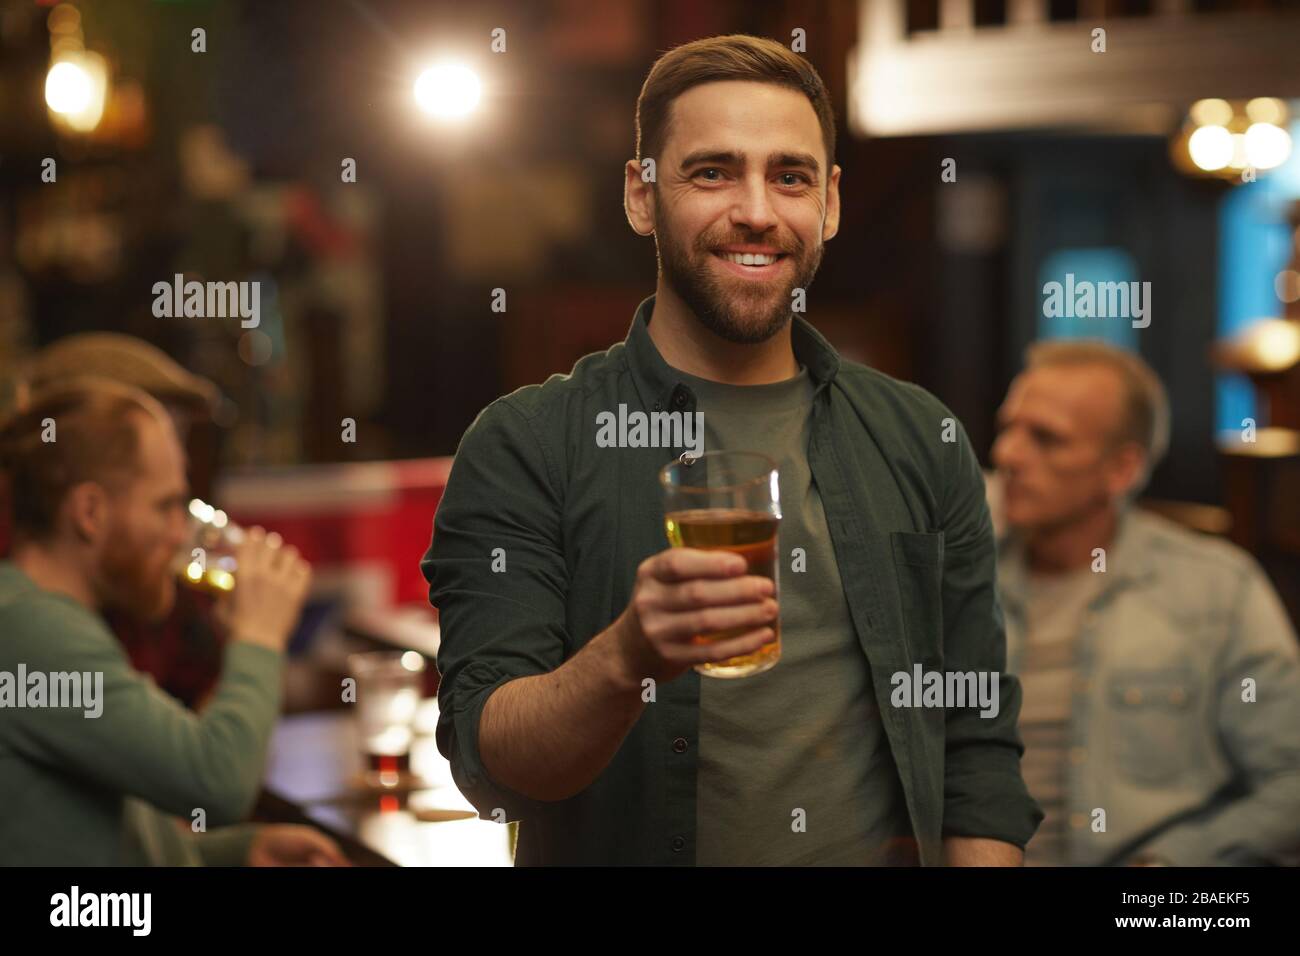 Porträt des jungen Mannes in legerer Kleidung lächelt an der Kamera und trinkt mit seinen Freunden in der Kneipe Bier Stockfoto